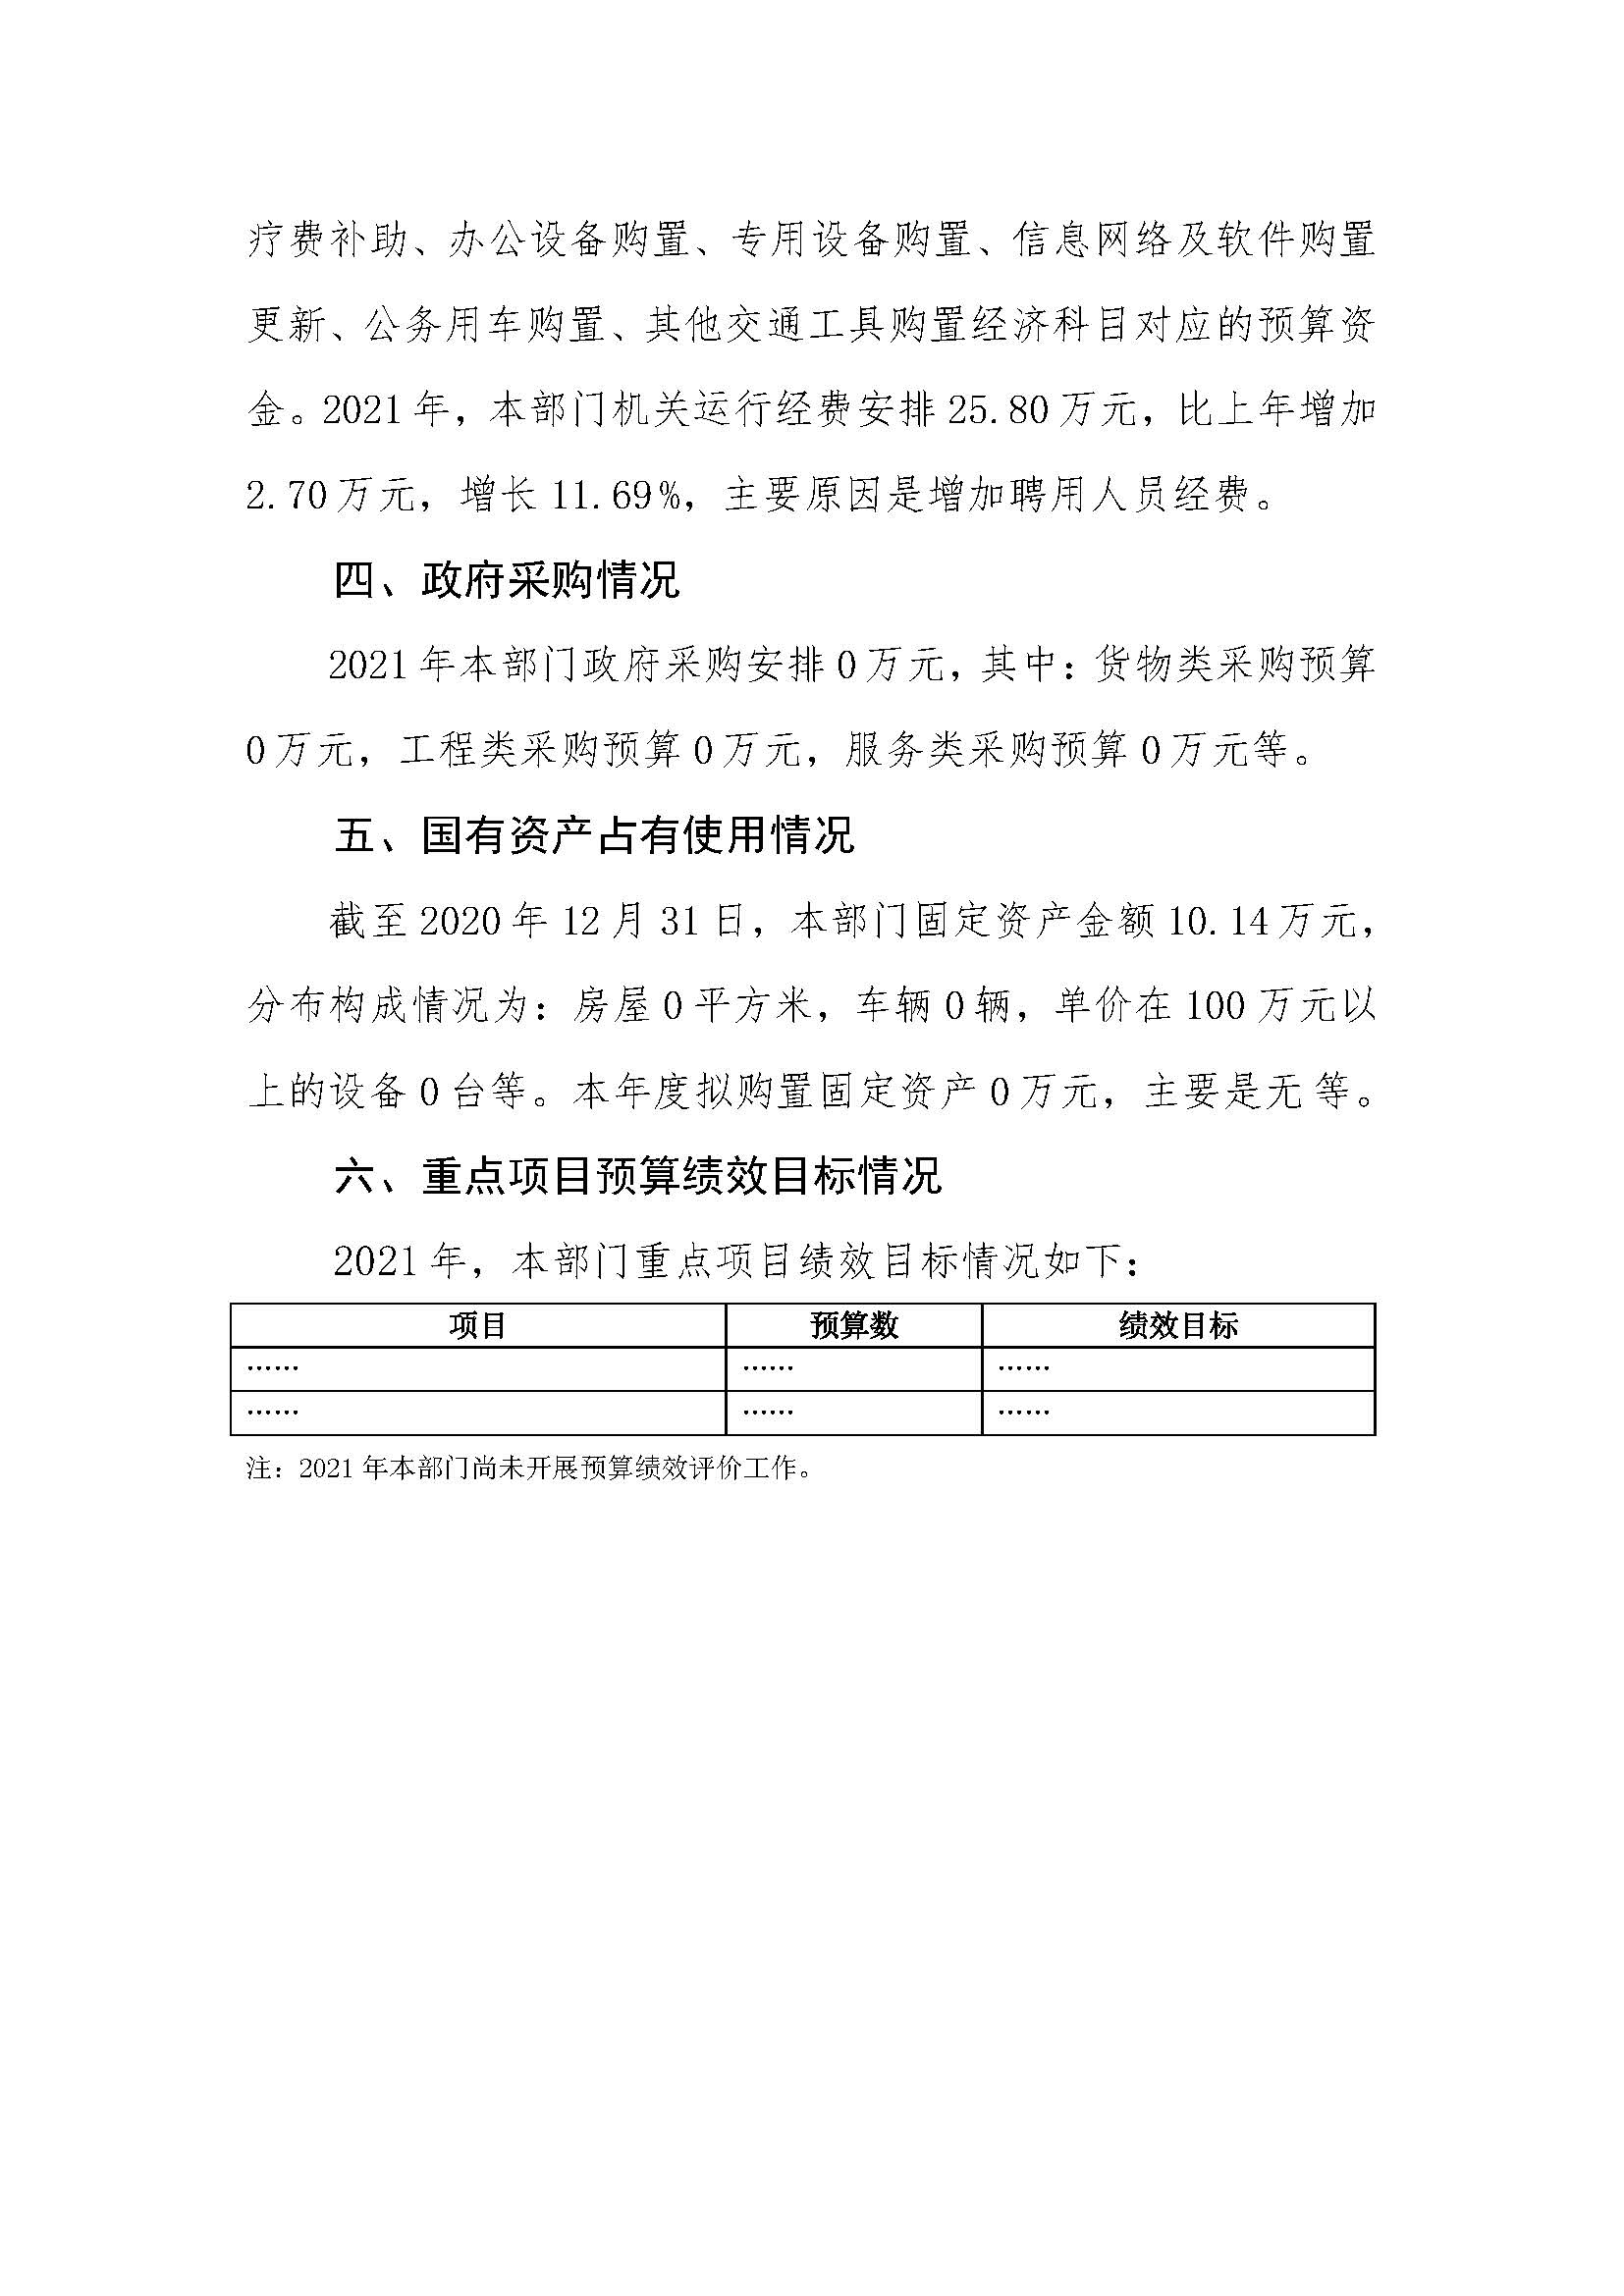 2021 年阳江高新技术产业开发区管理委员会平东工业园部门预算_页面_19.jpg